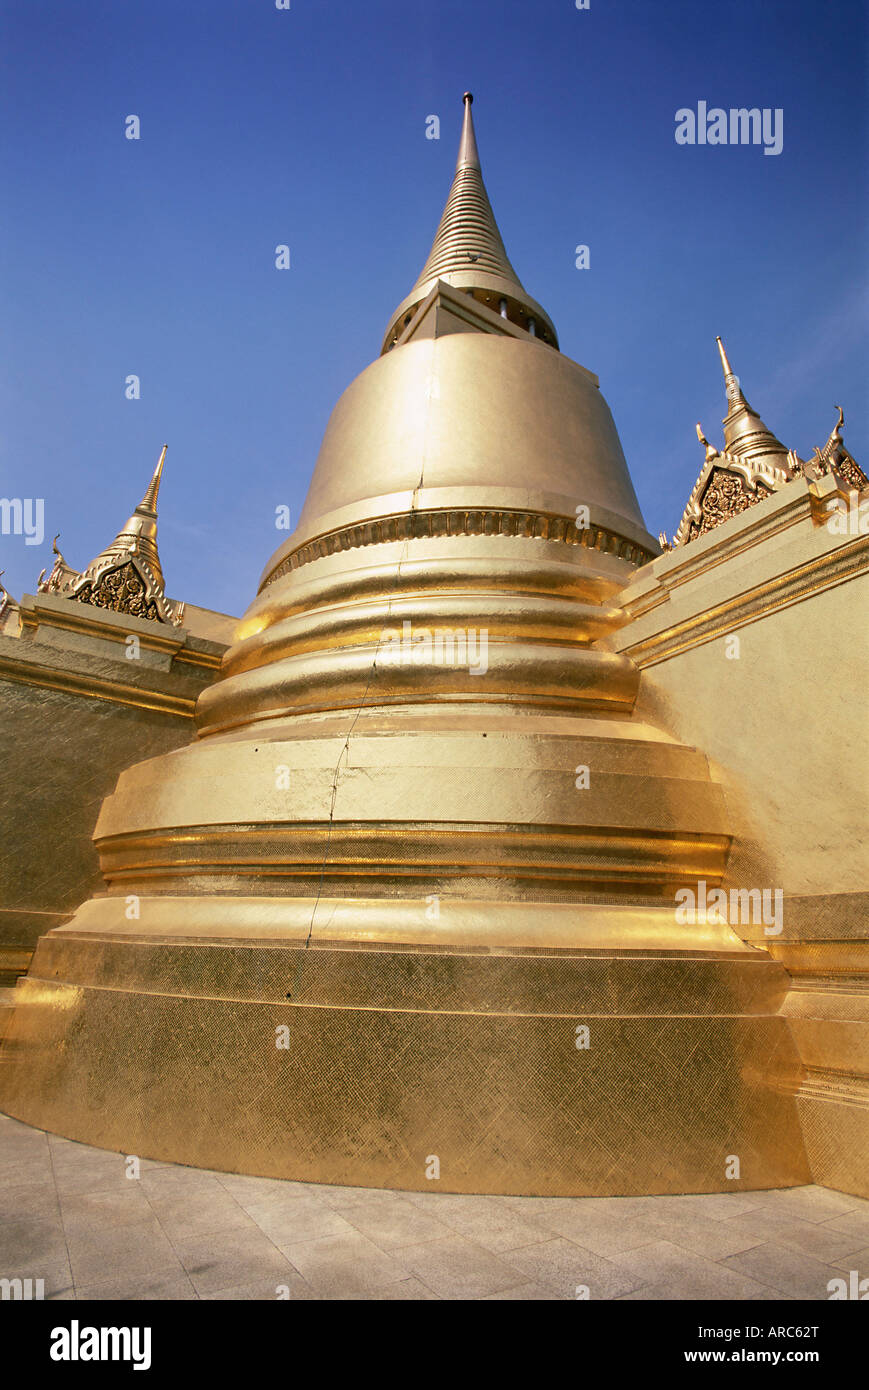 Stupa doré, Temple du Bouddha d'Émeraude (Wat Phra Kaew) dans le Grand Palace, Bangkok, Thaïlande, Asie du Sud-Est, Asie Banque D'Images